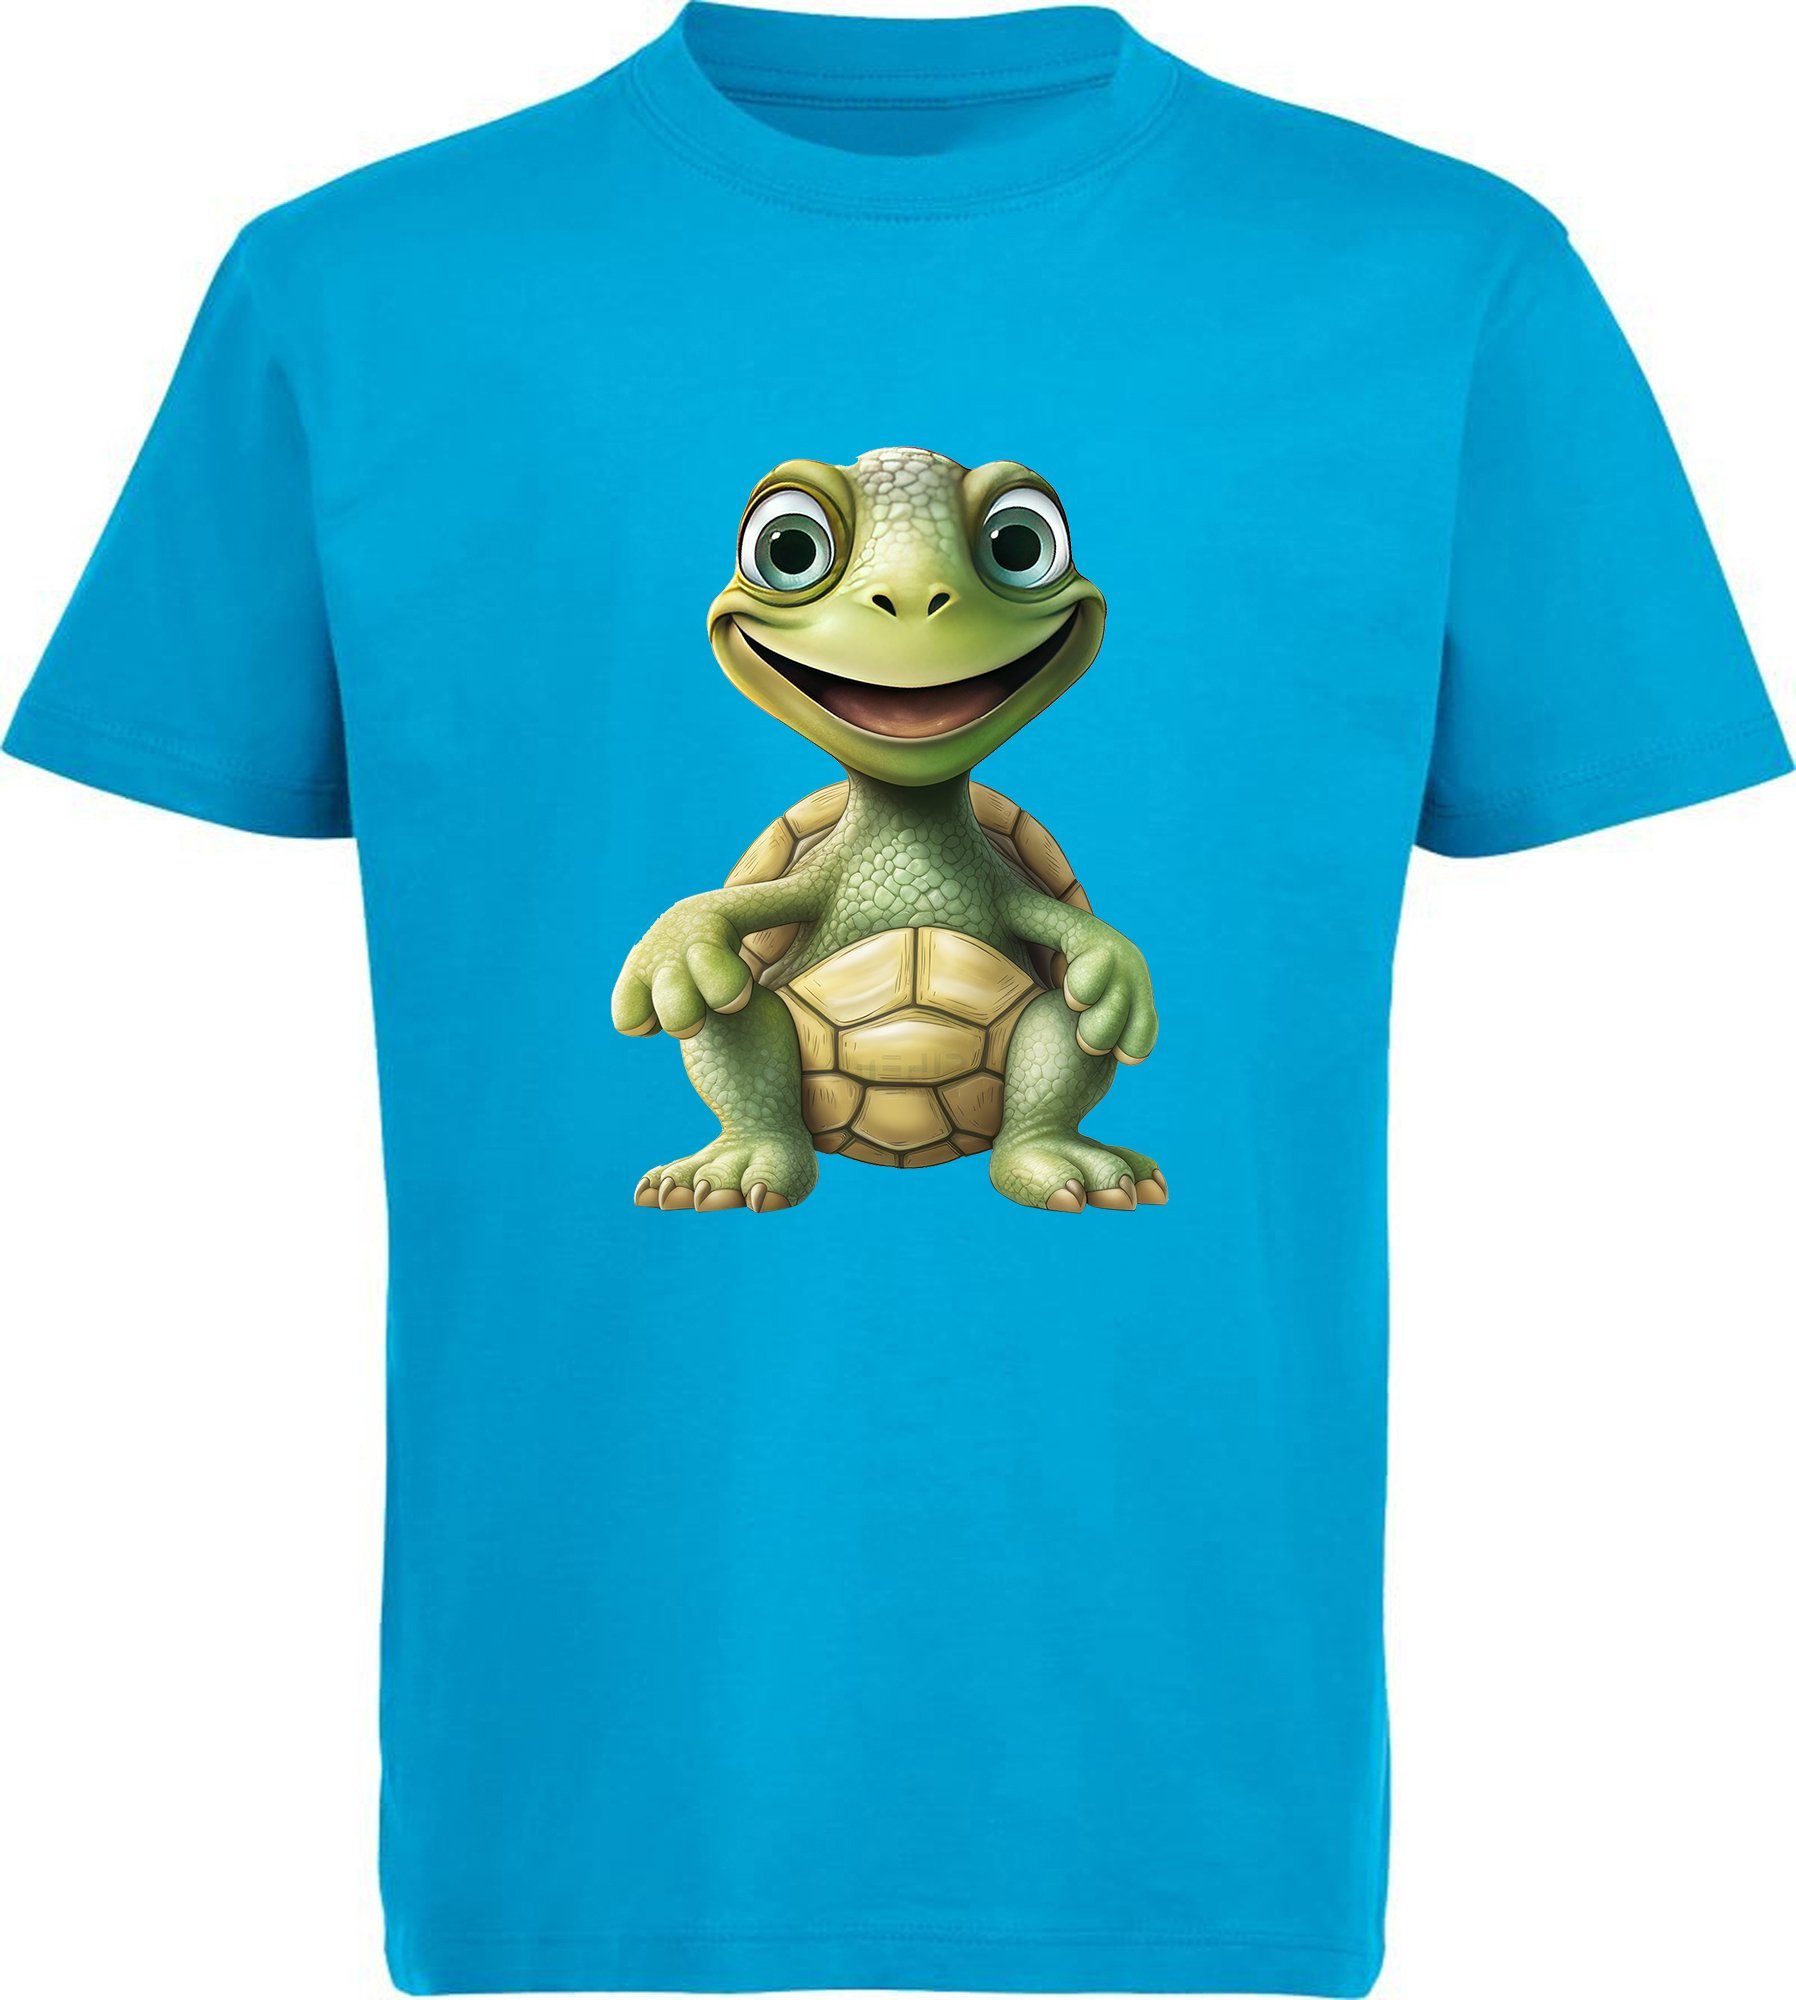 MyDesign24 T-Shirt Kinder Wildtier Print Shirt bedruckt - Baby Schildkröte Baumwollshirt mit Aufdruck, i279 aqua blau